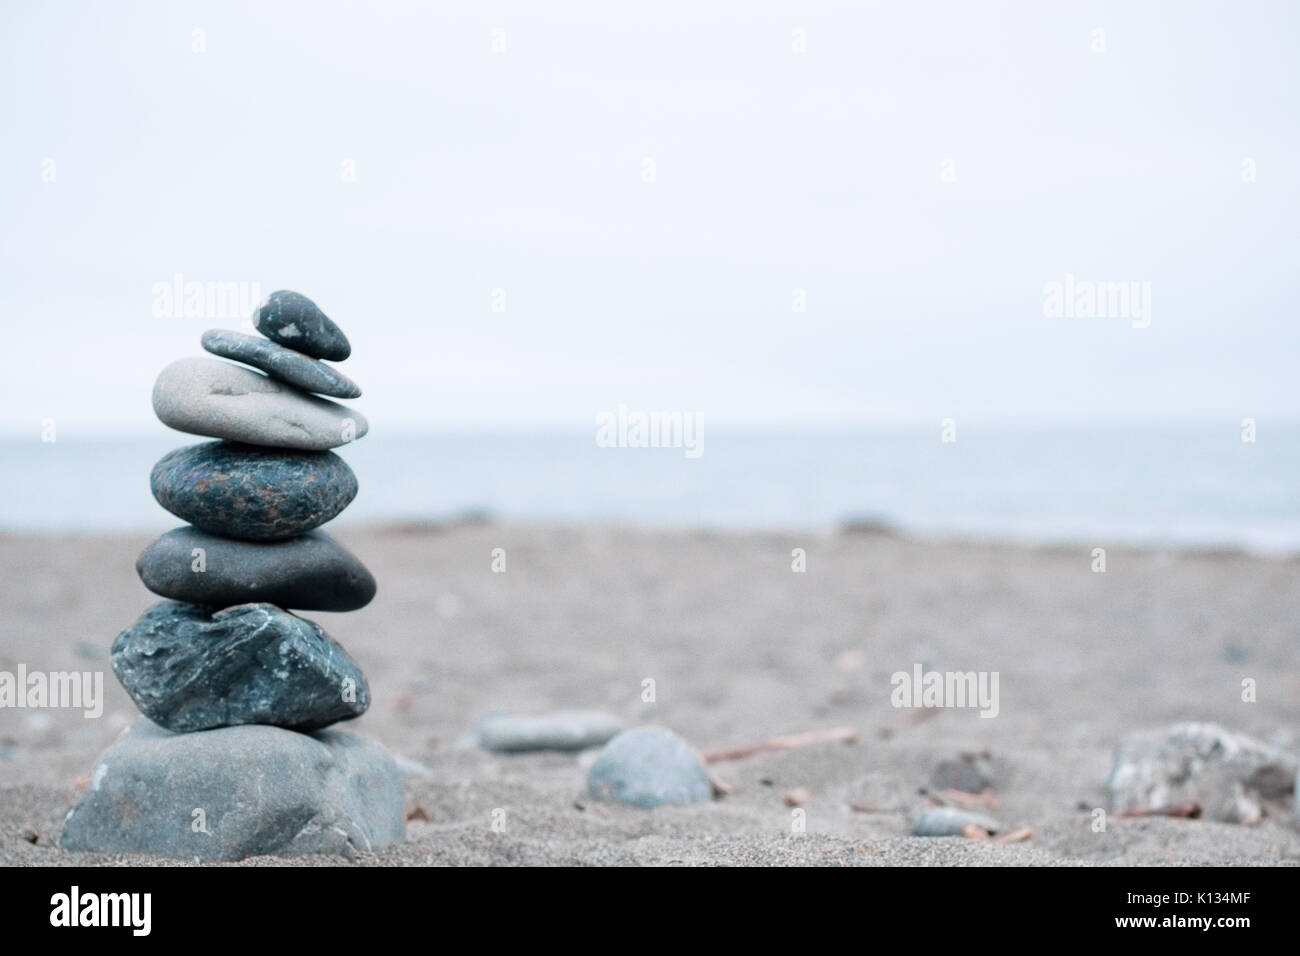 Monocromatico, sereno, blu rocce impilate su una spiaggia della California che simboleggiano la pace, equilibrio, meditazione e consapevolezza Foto Stock